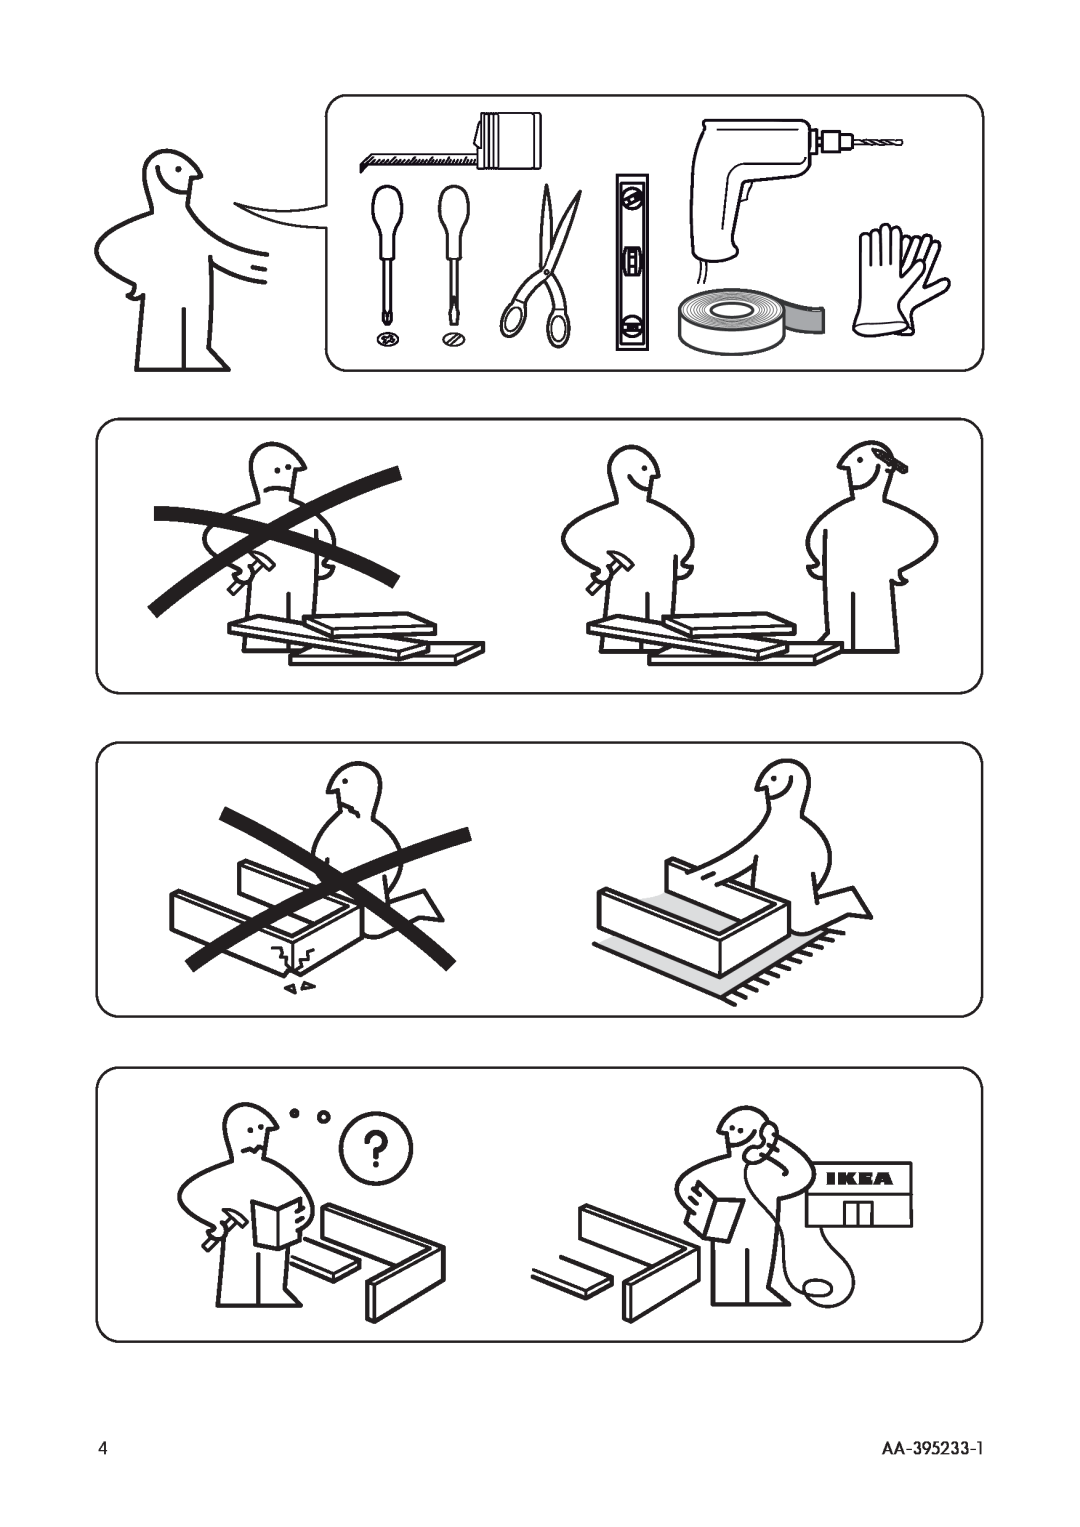 IKEA DW60 manual AA-395233-1 